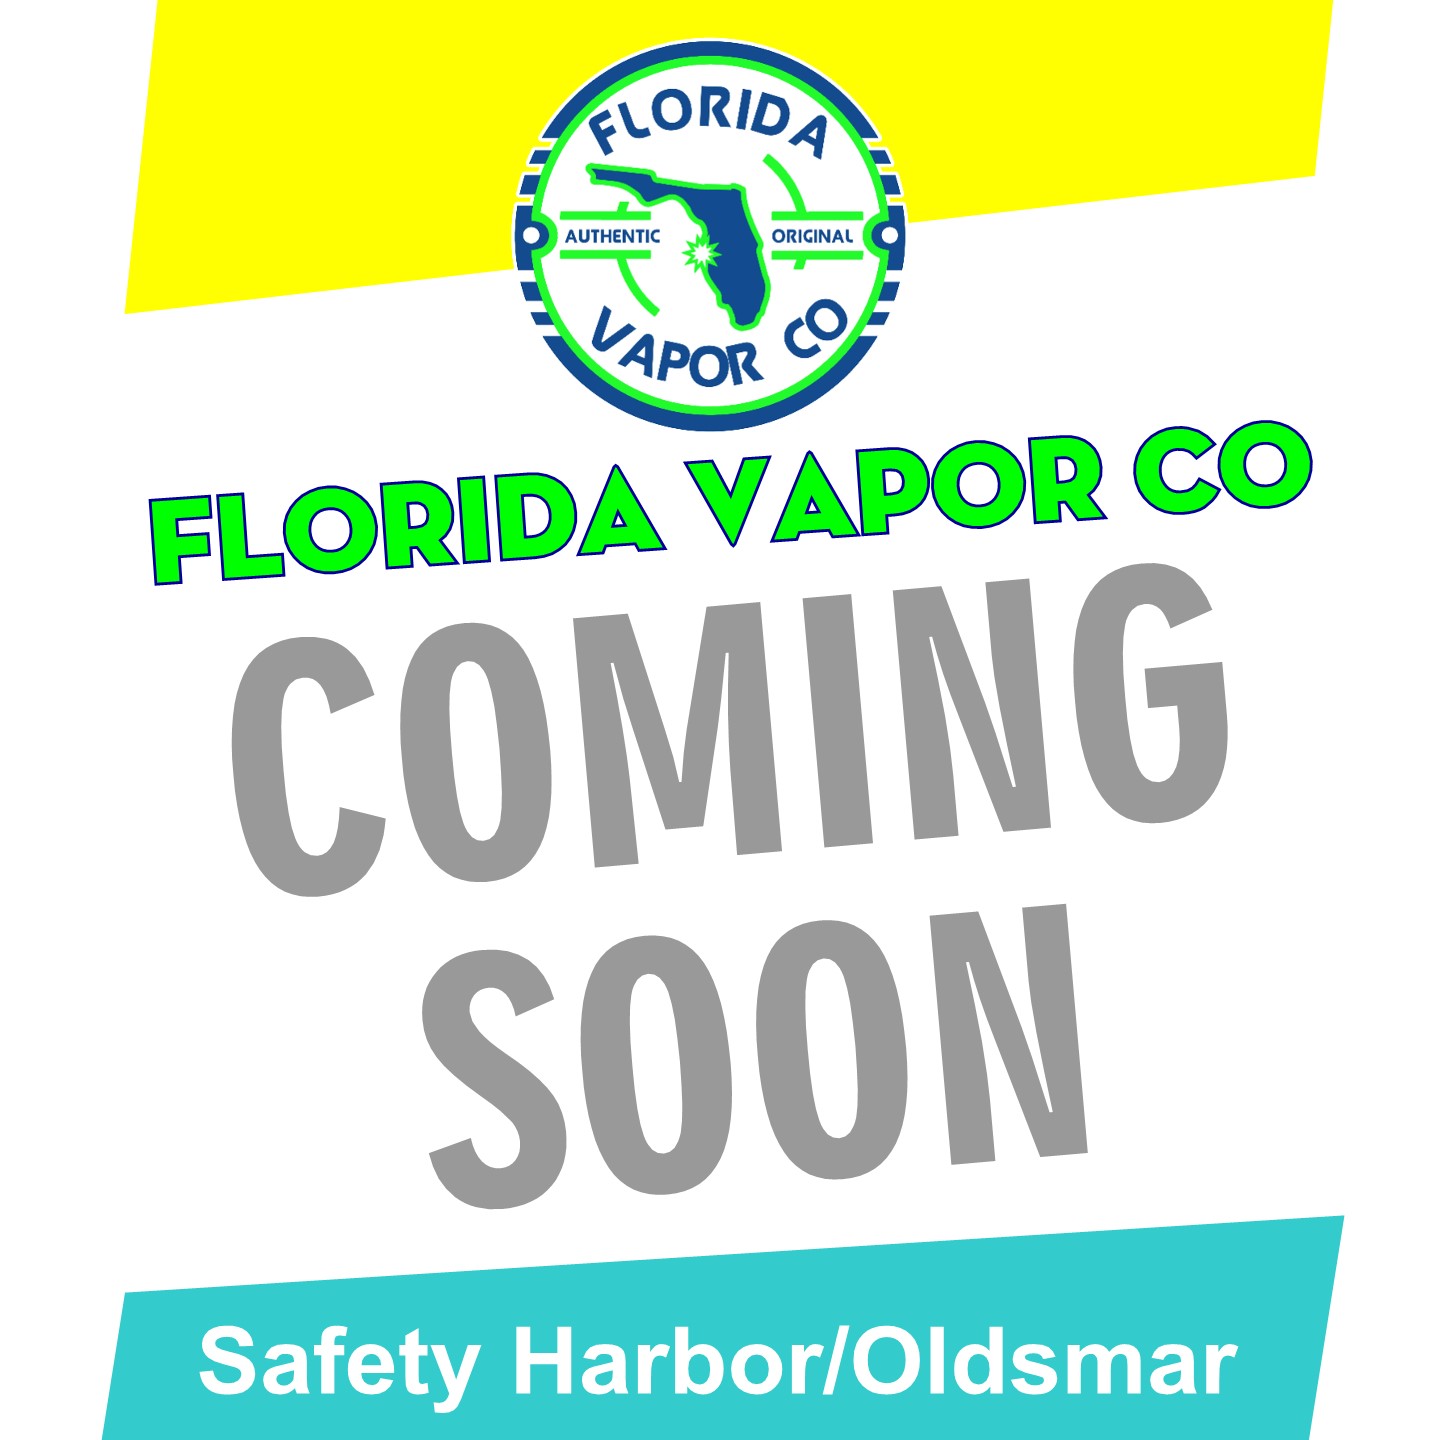 fla_vapor_co_safety_harbor_oldsmar.jpg